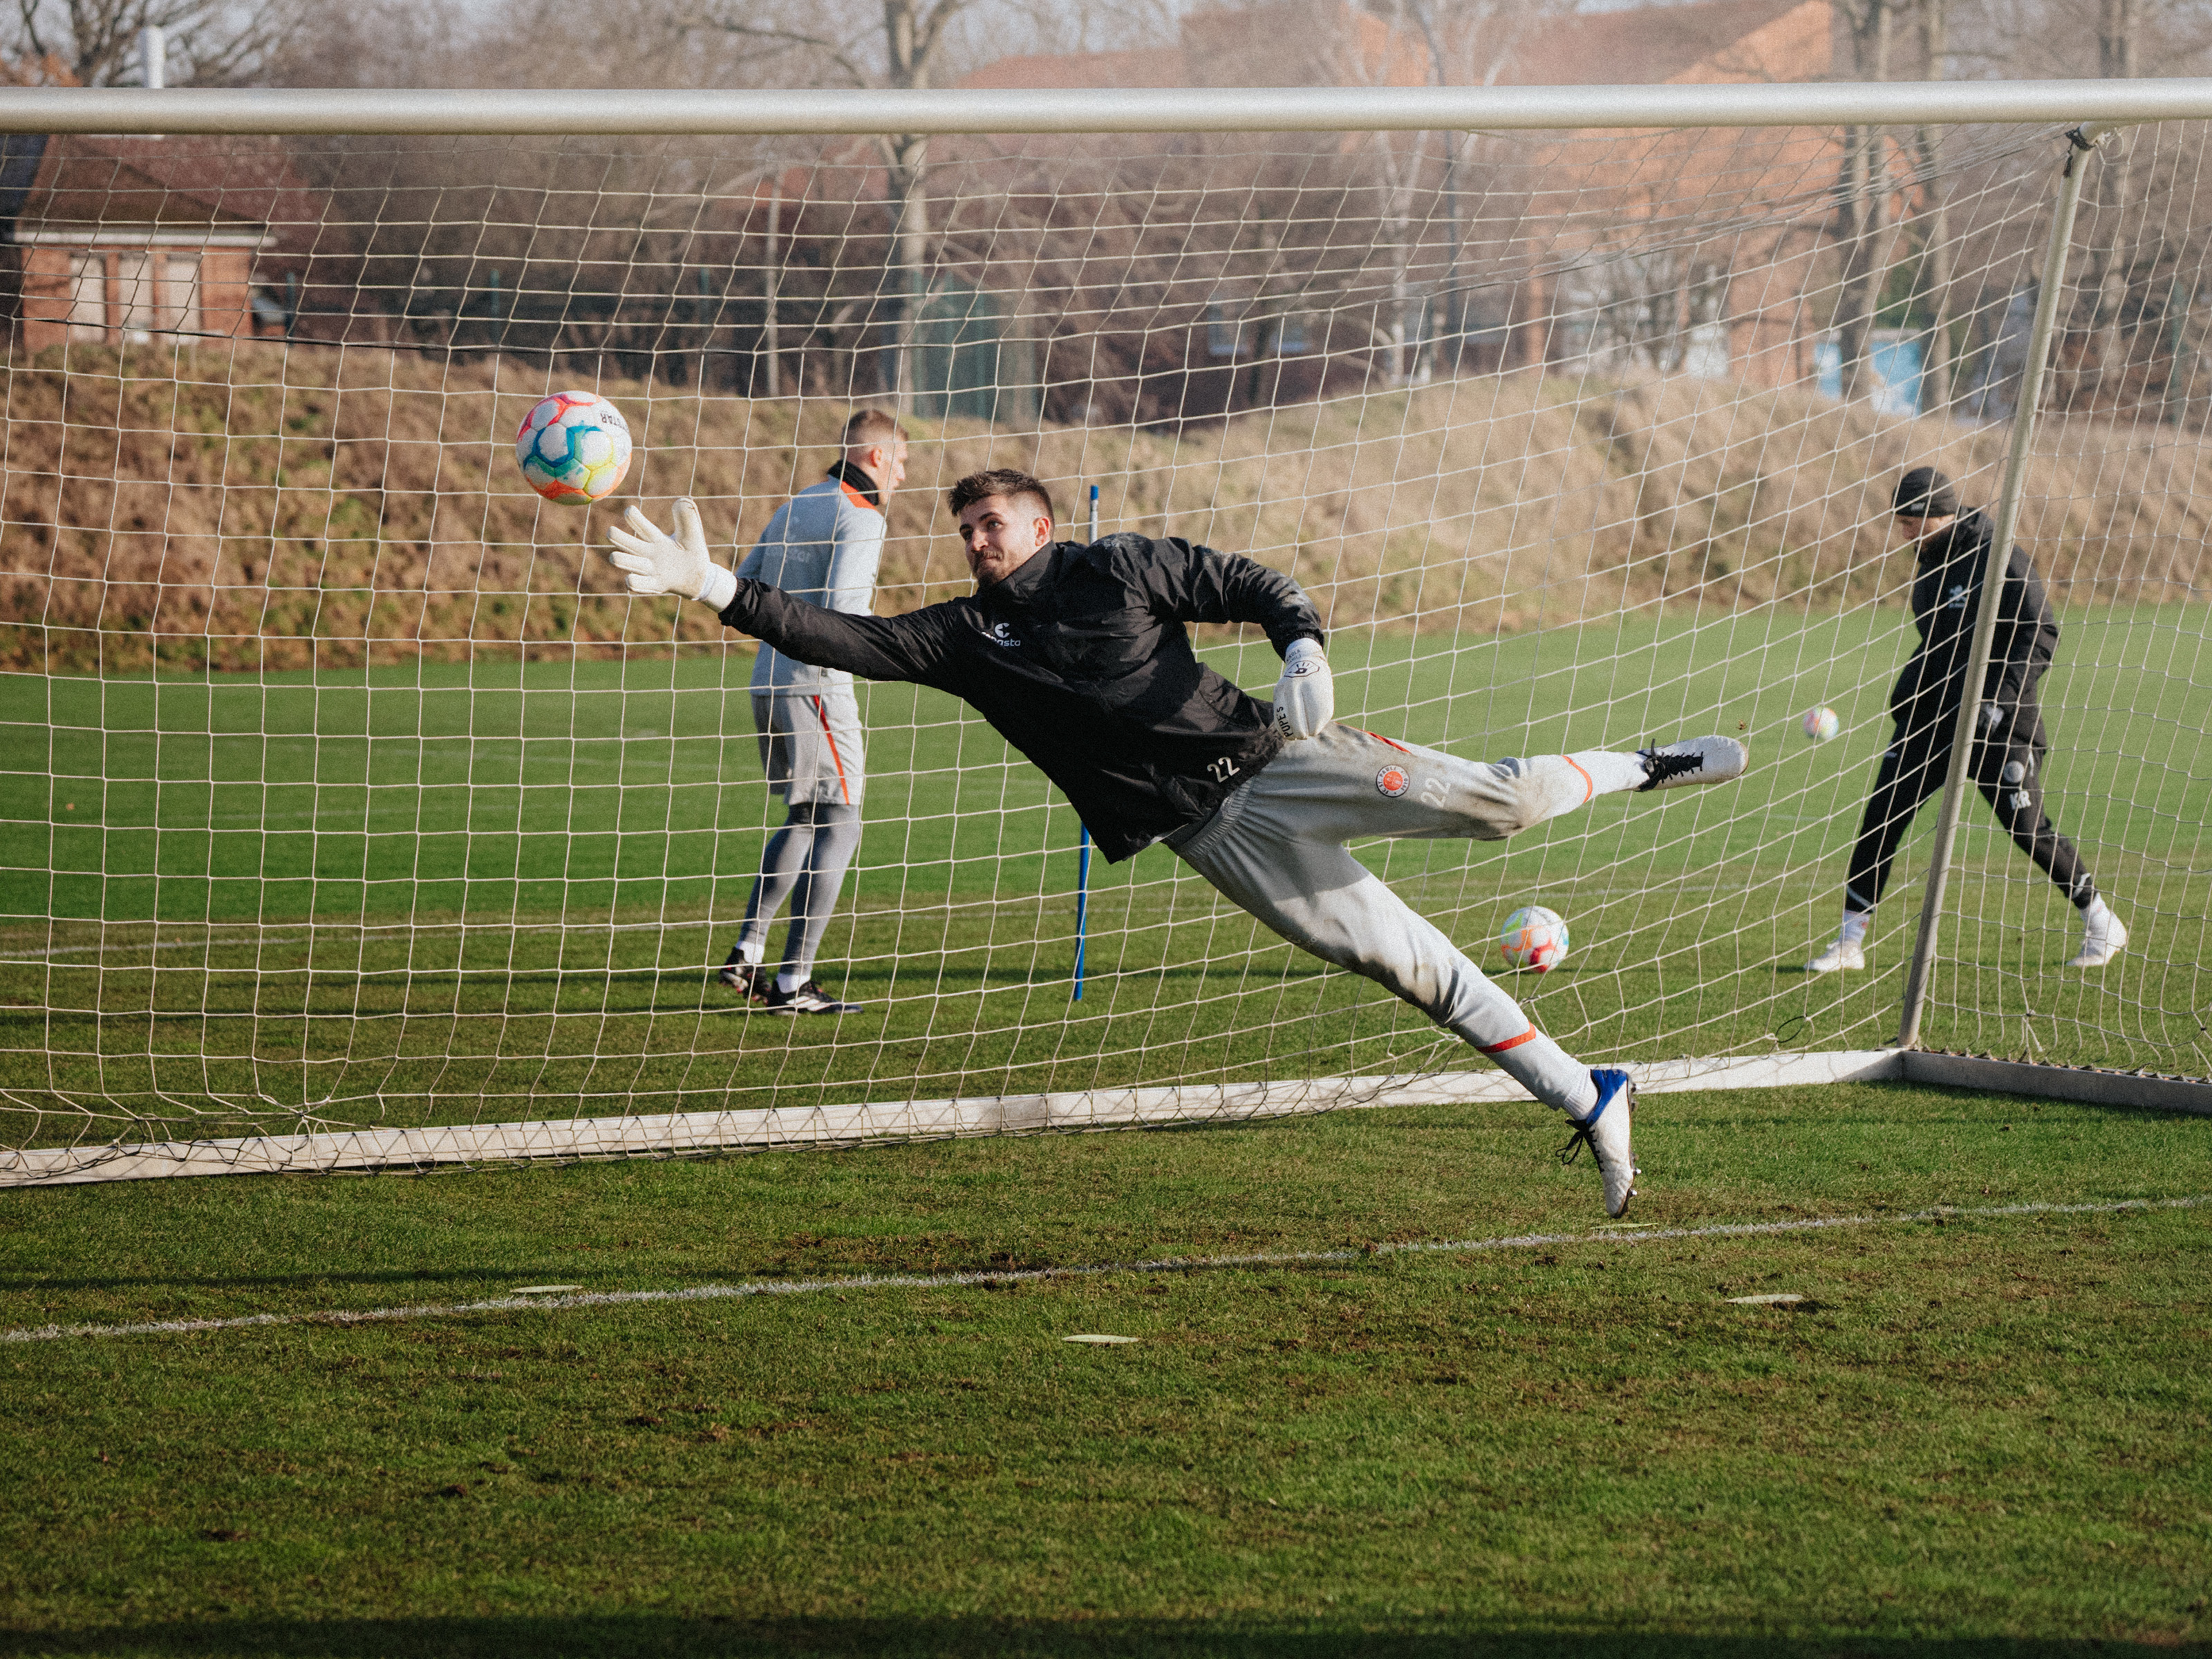 Nikola Vasilj springt beim Training einem Ball hinterher und streckt dabei den rechten Arm aus. Im Hintergrund sieht man ein Tor und zwei weitere St. Pauli-Spieler, die sich einen weiteren Ball zuspielen.